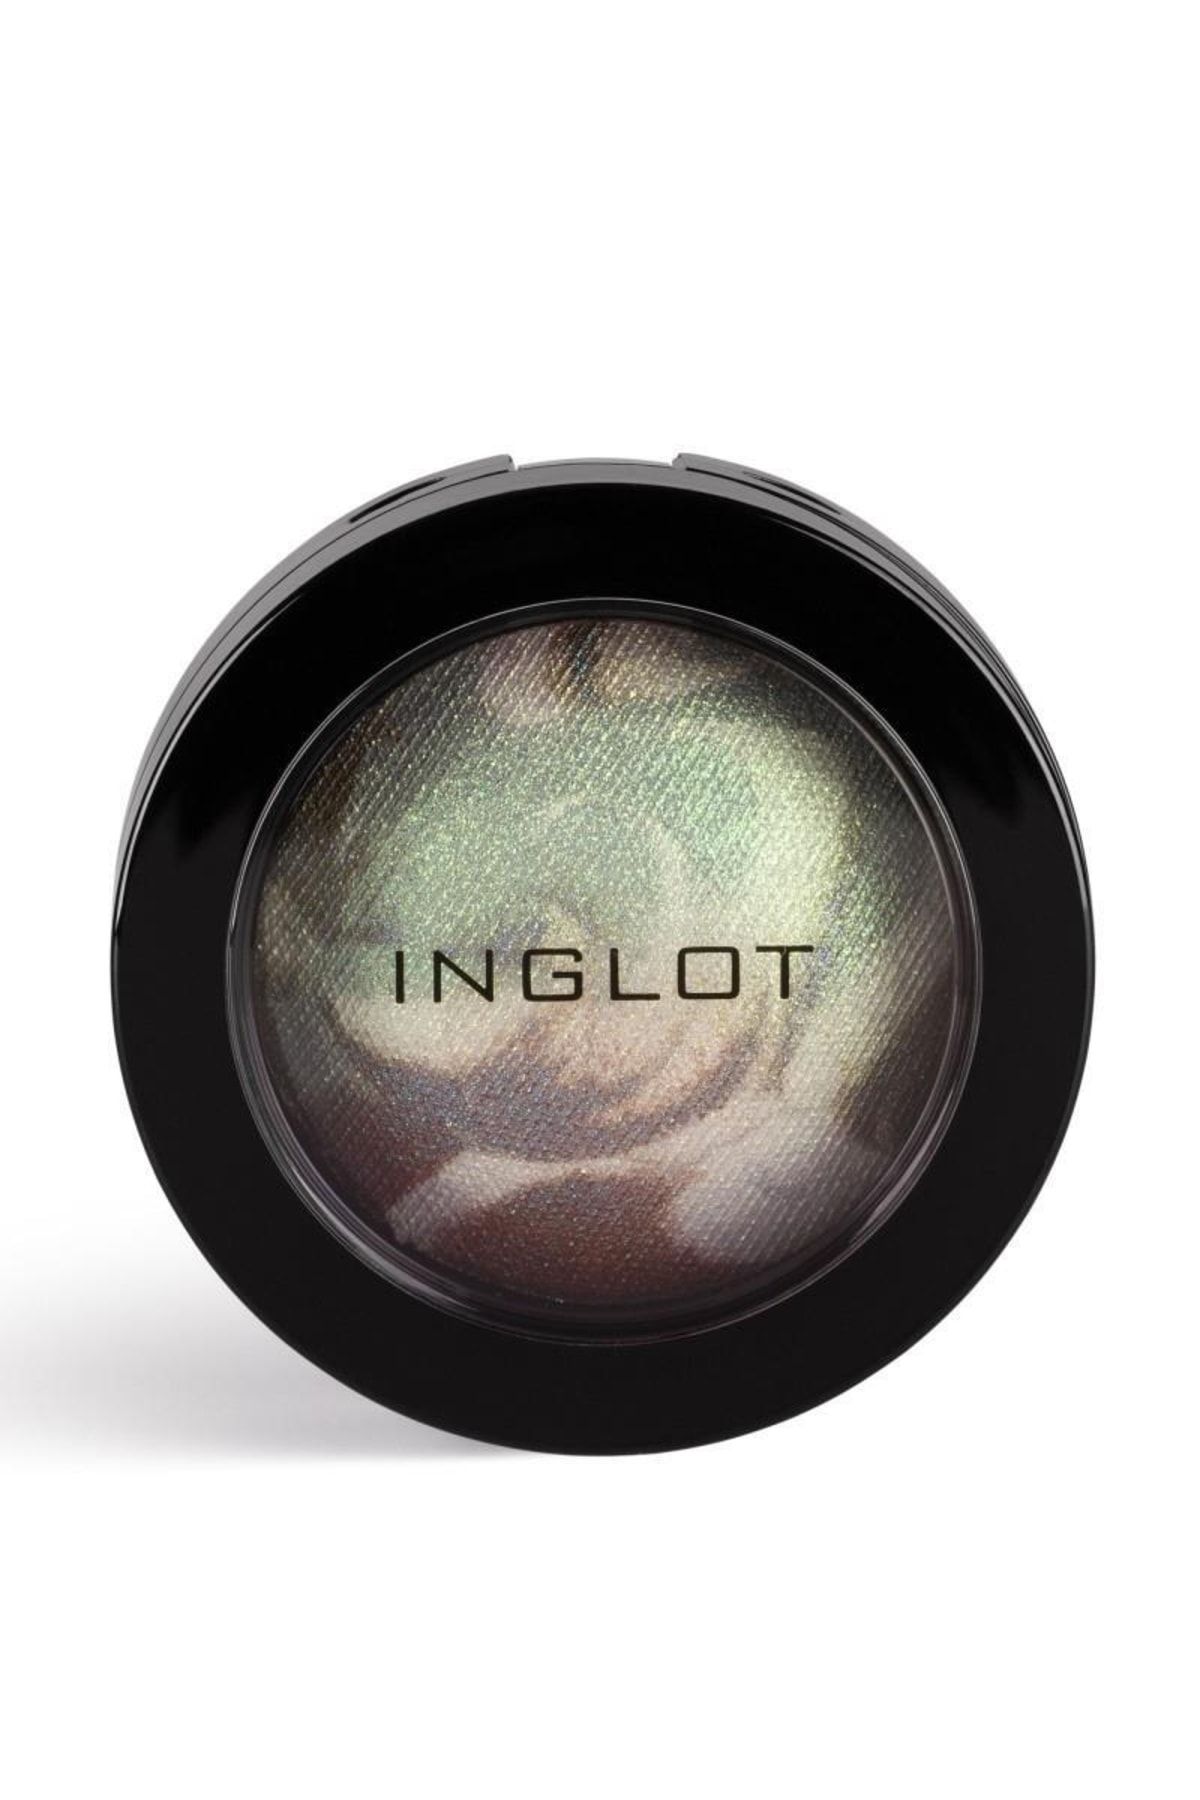 Inglot Eyelighter